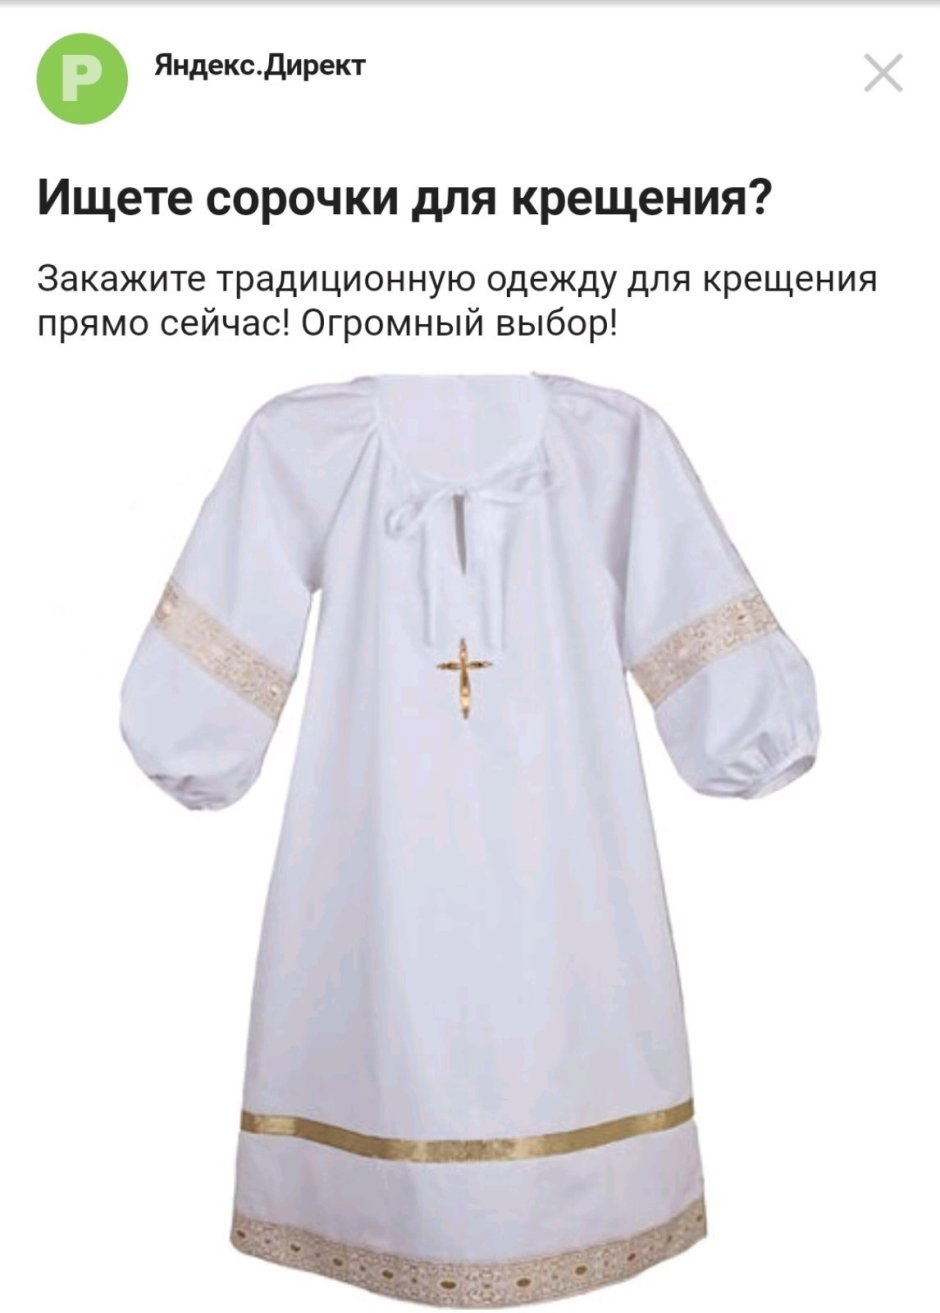 Сорочка для крещения женщины